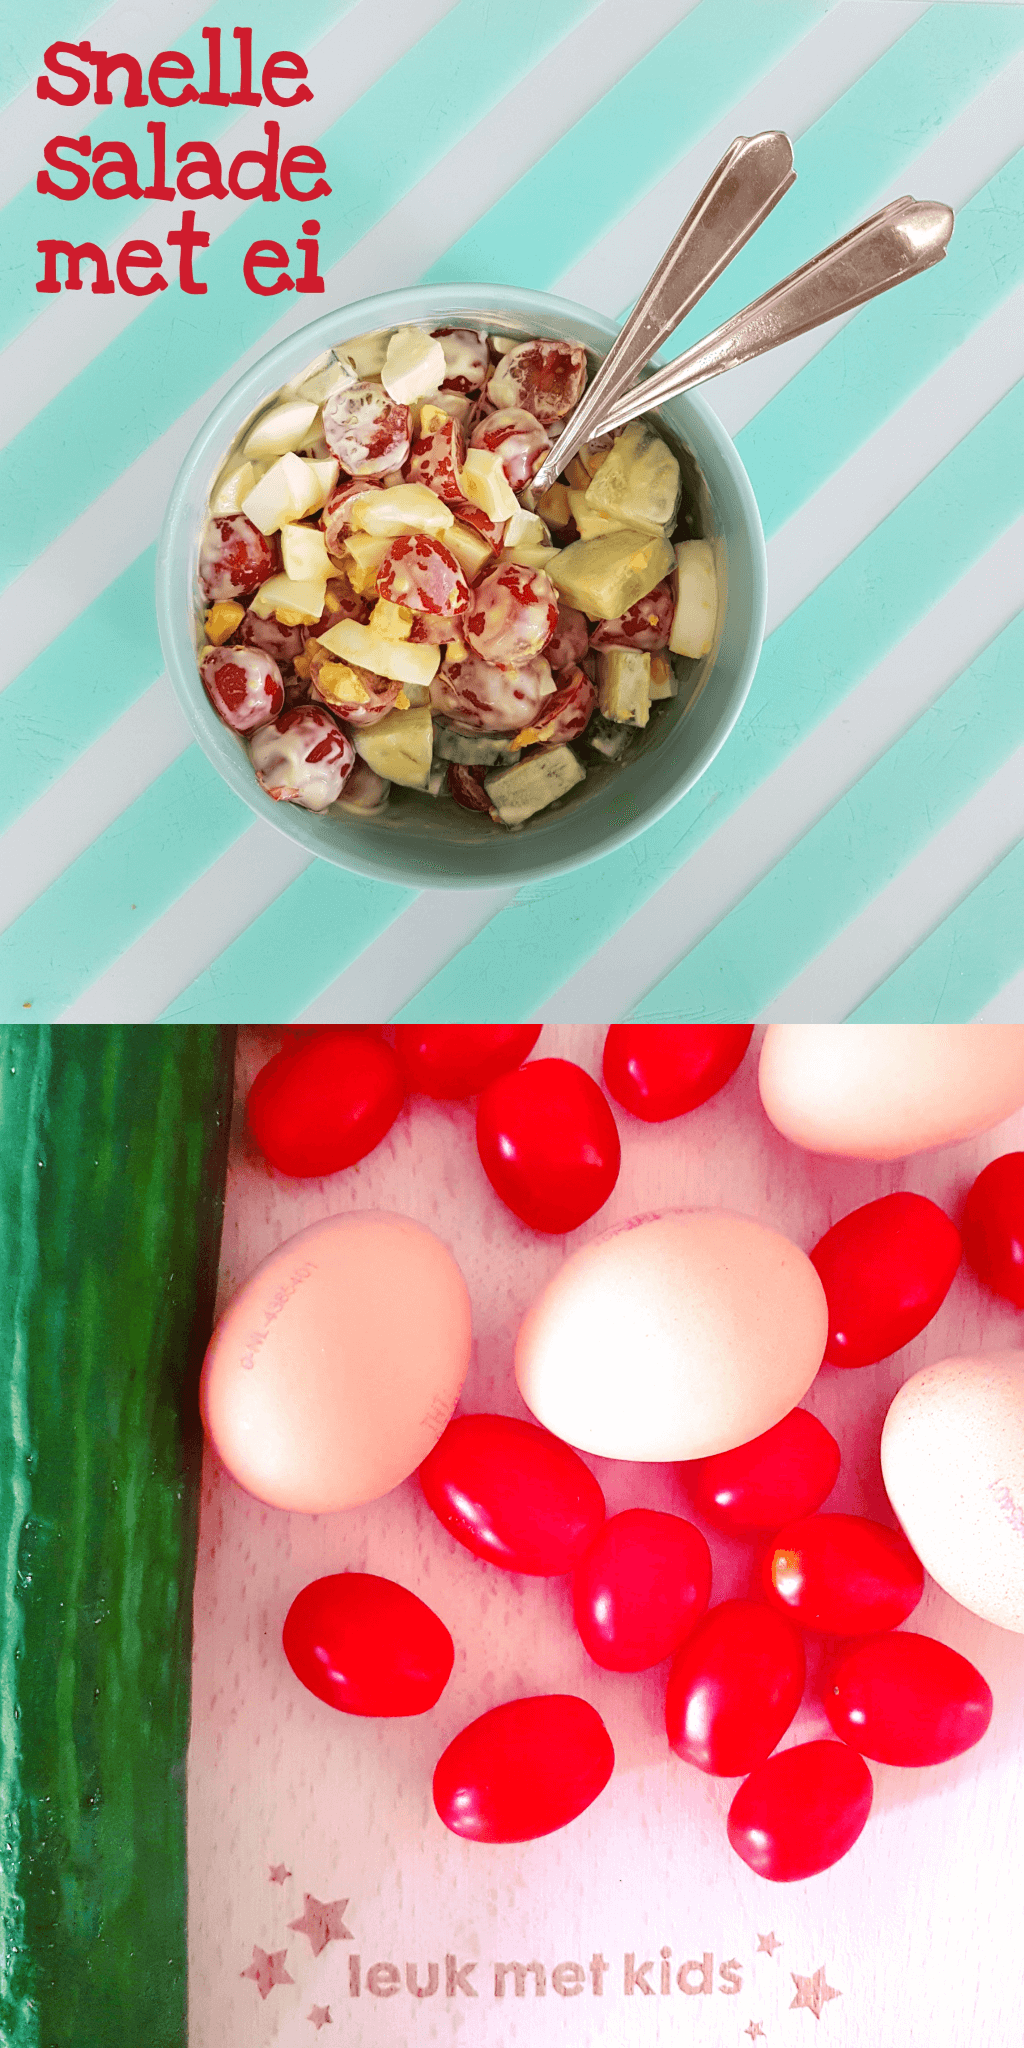 Recept voor snelle zomerse eiersalade, voor vakantie of thuis #leukmetkids #recept #kinderen